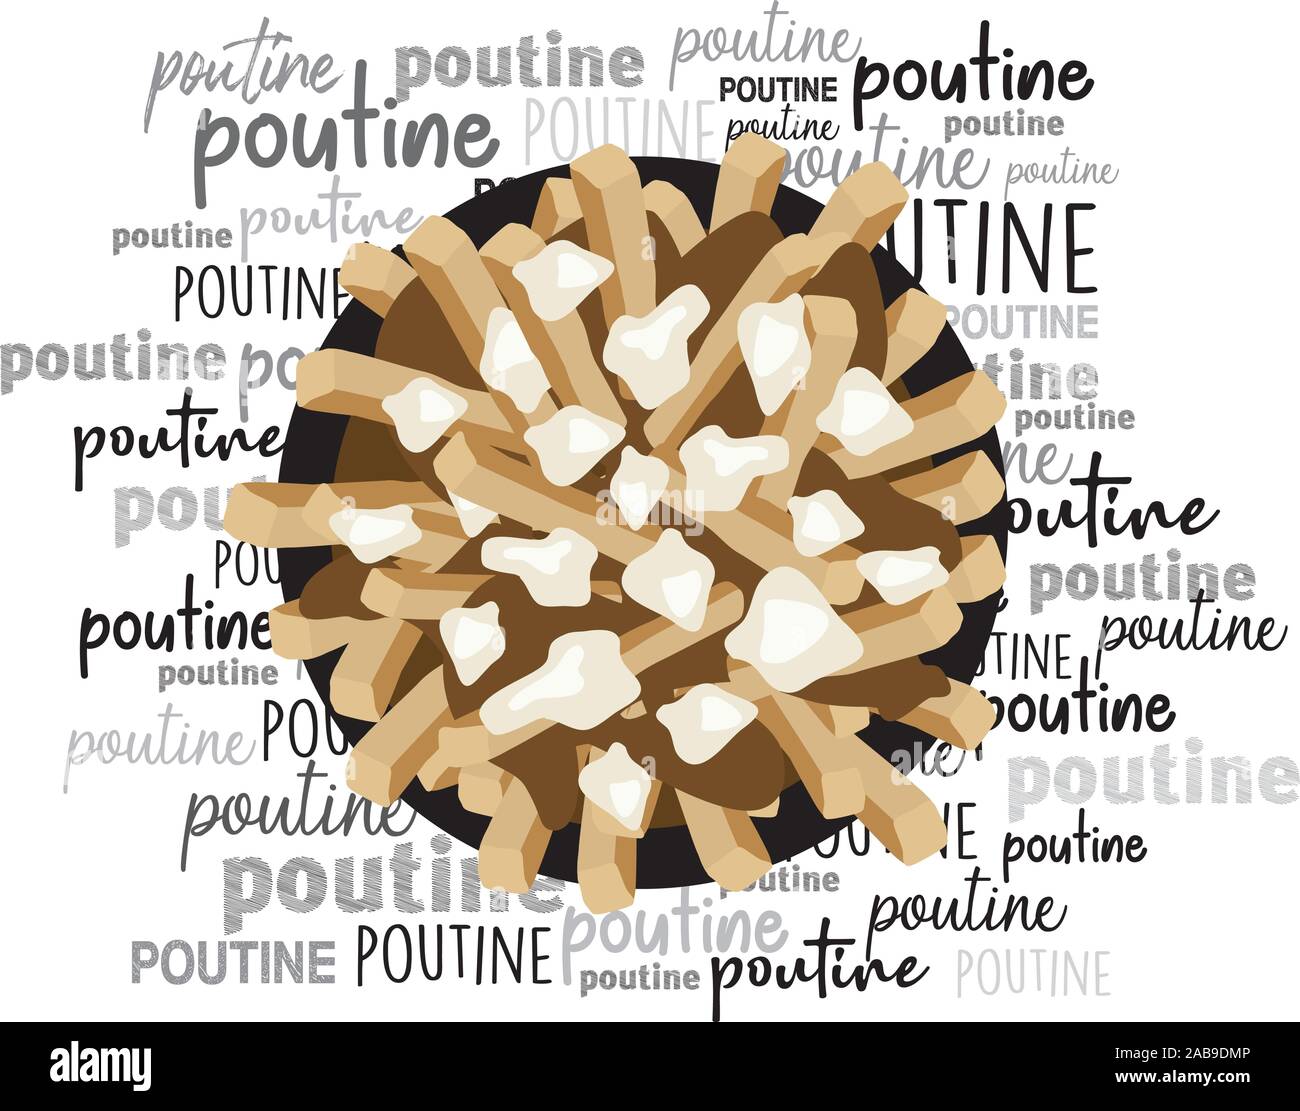 La poutine Québec repas avec frites, sauce et fromage en grains nuage de mots vecteur illustration Illustration de Vecteur